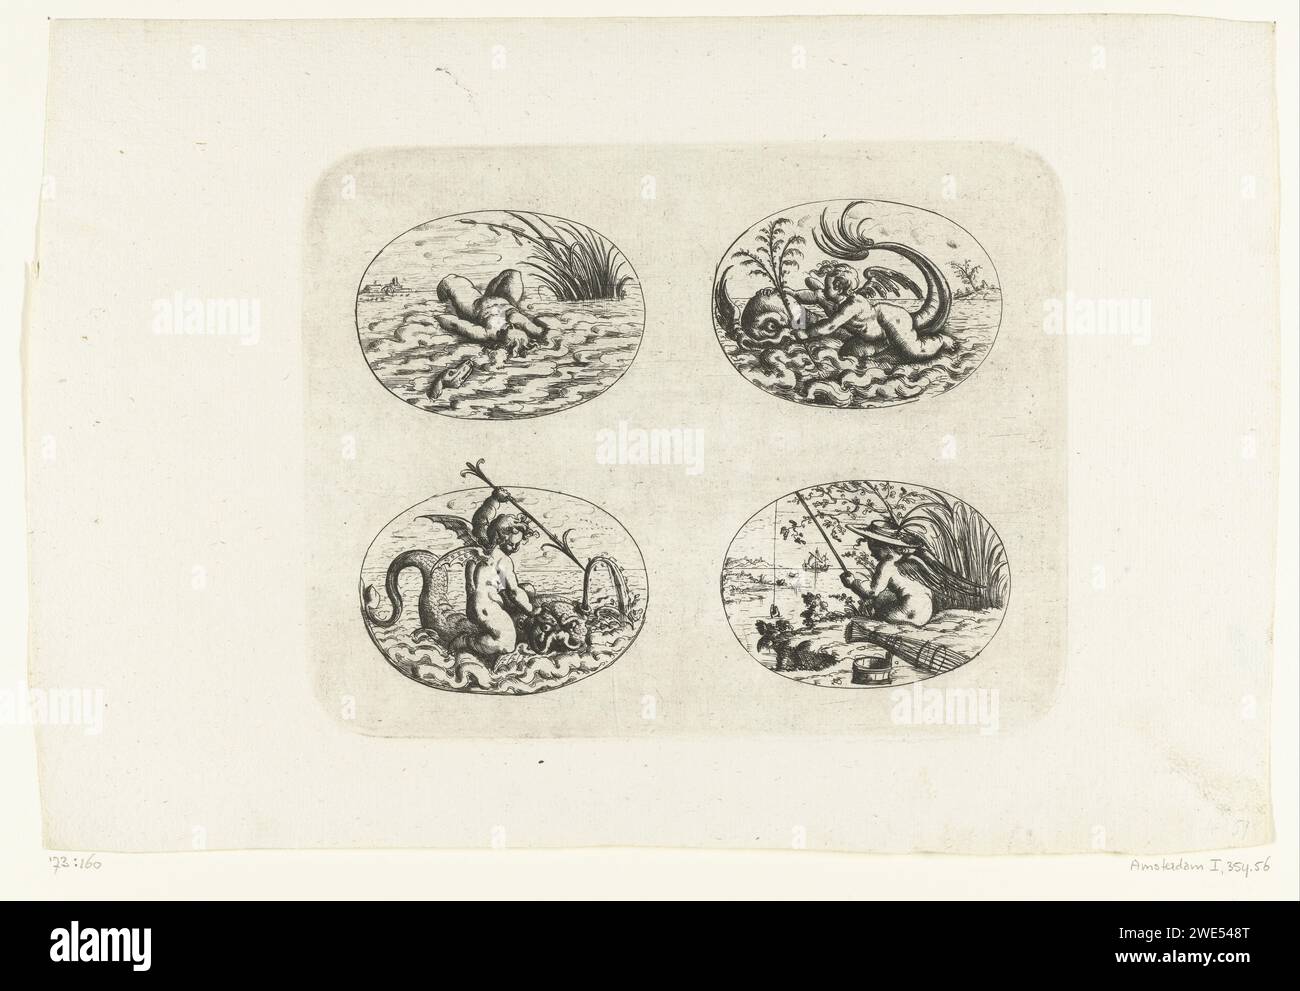 Quattro ovali sdraiati con putti, Christoph Jamnitzer, 1573 - 1610 stampa in alto a sinistra di un putto nell'acqua sulla schiena, un putto con un ramo in mano che guida un delfino, in basso a sinistra un putto con un arpione su un pesce che spruzza l'acqua e in basso a destra un putto, pescando sul lungomare. Foglia di una serie di decorazioni piatte con crete grotesken, cartigli, ovali, mascarons, putti e creature fantastiche. La collana è composta da tre riviste, due riviste di testo con l'assegnazione e la prefazione e 60 riviste, distribuite su tre libri. Incisione (forse) della carta in Germania Foto Stock